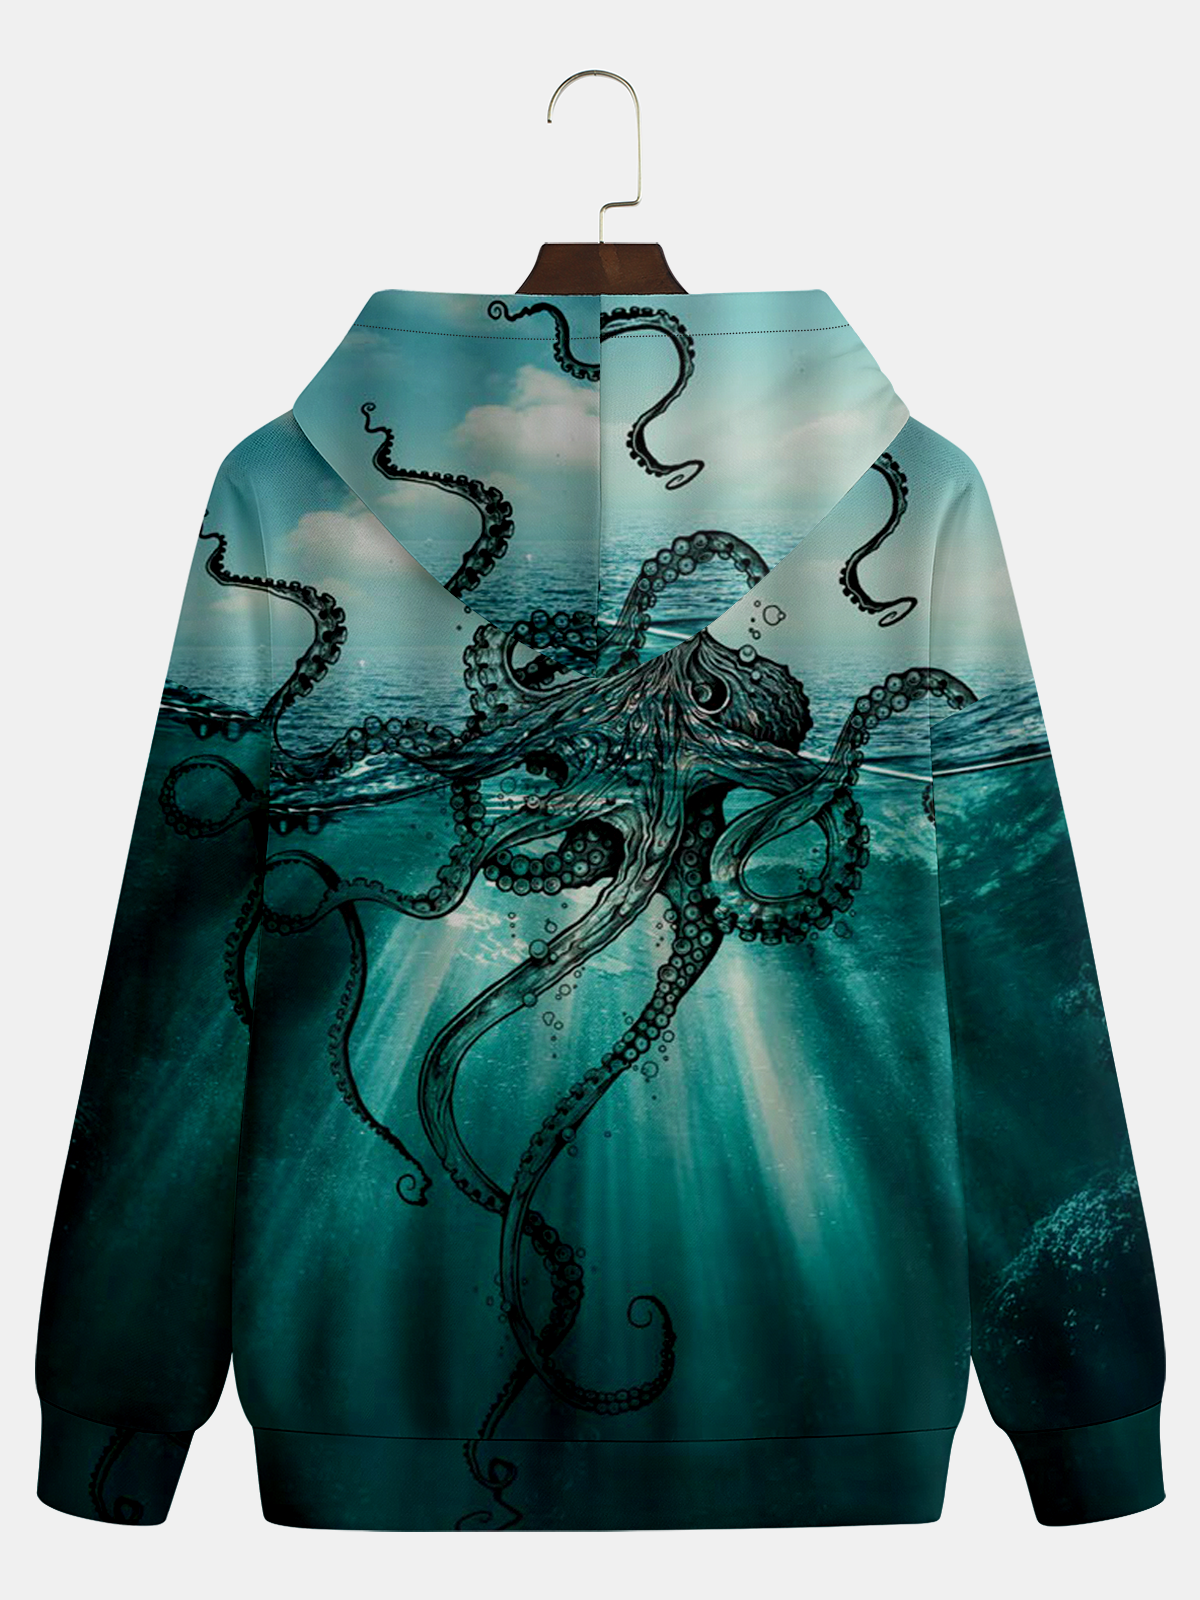 Octopus Hoodie Sweatshirt